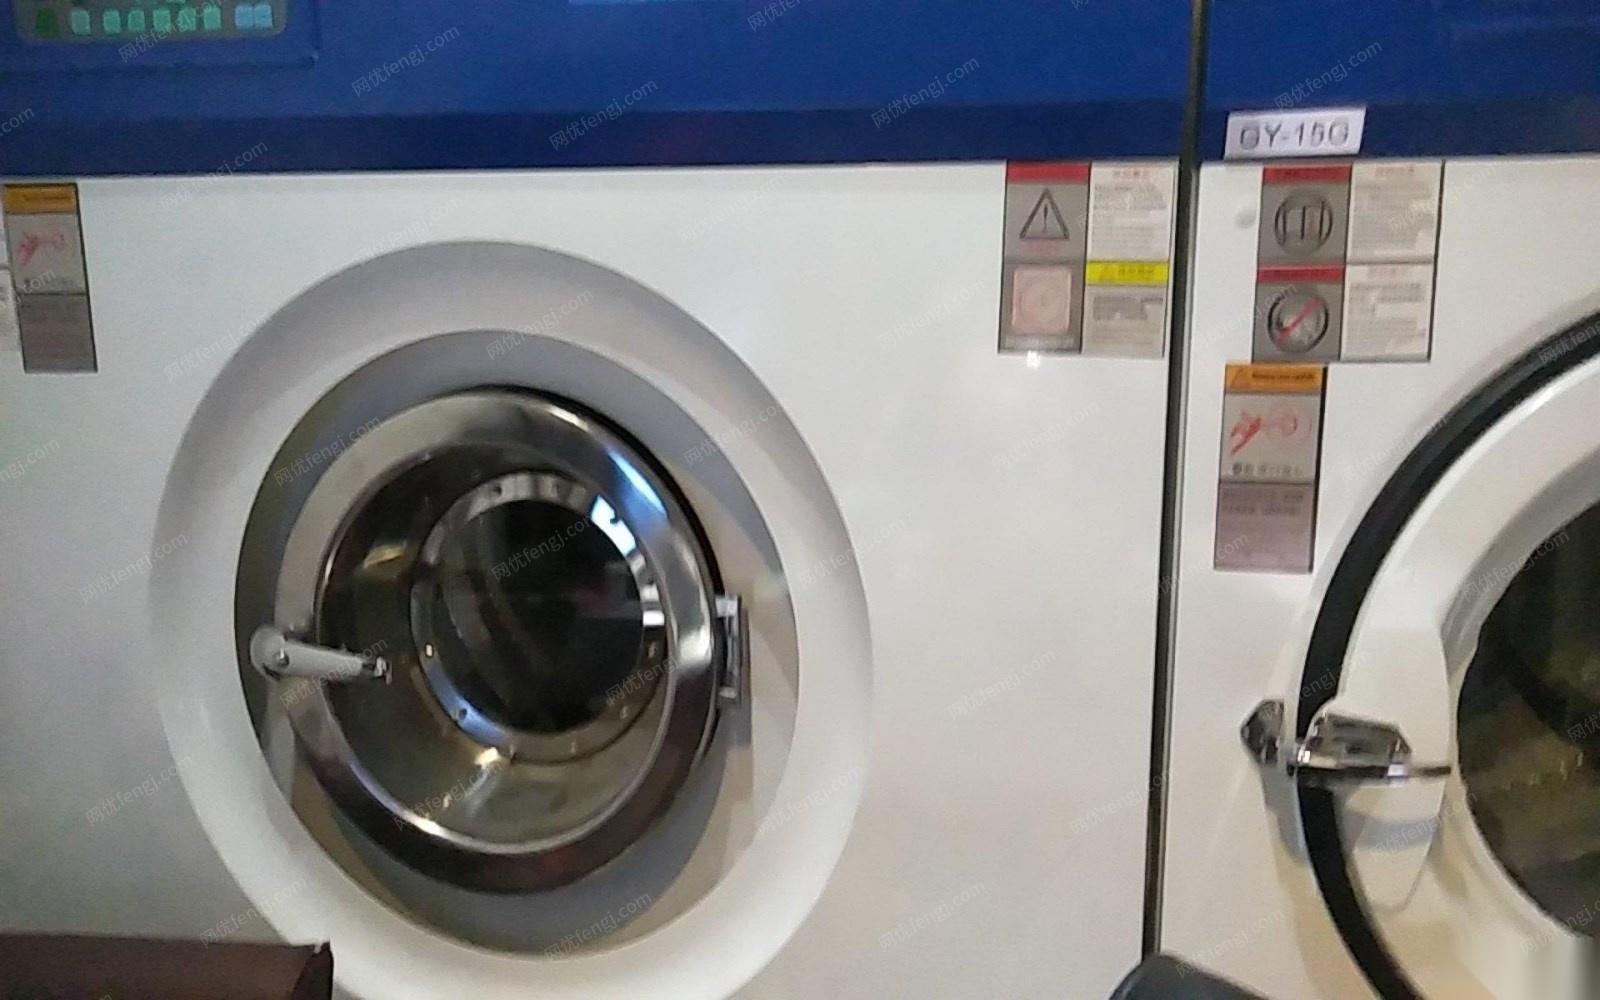 广东广州不想做了出售洗衣店整套灰姑娘干洗设备,10KG水洗 烘干,烫台,打包机等 打包价30000元